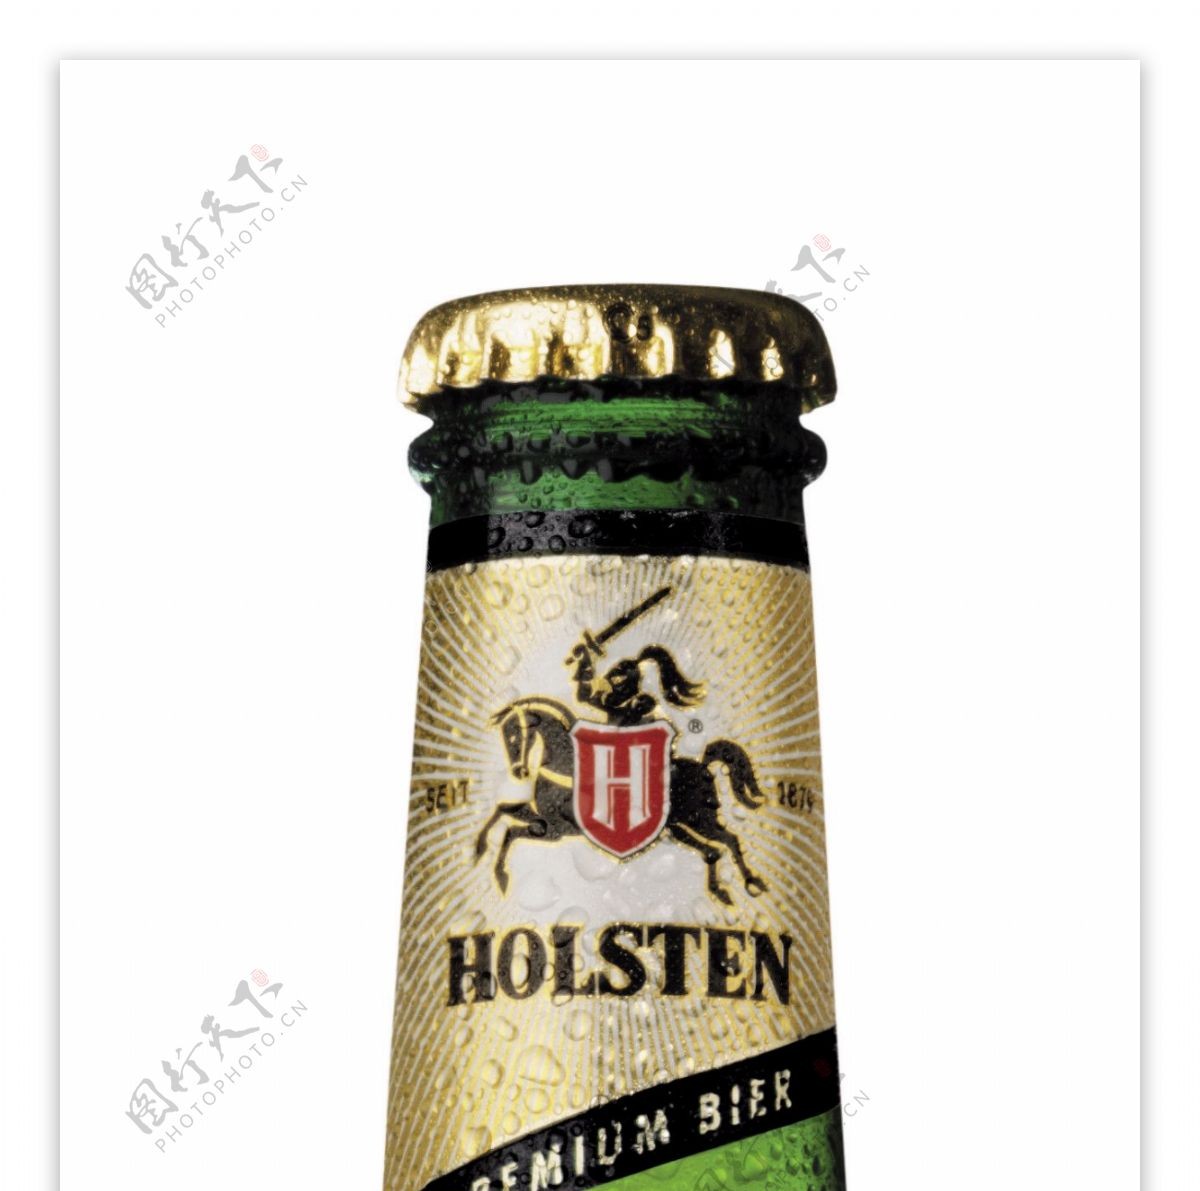 嘉士伯holsten啤酒图片